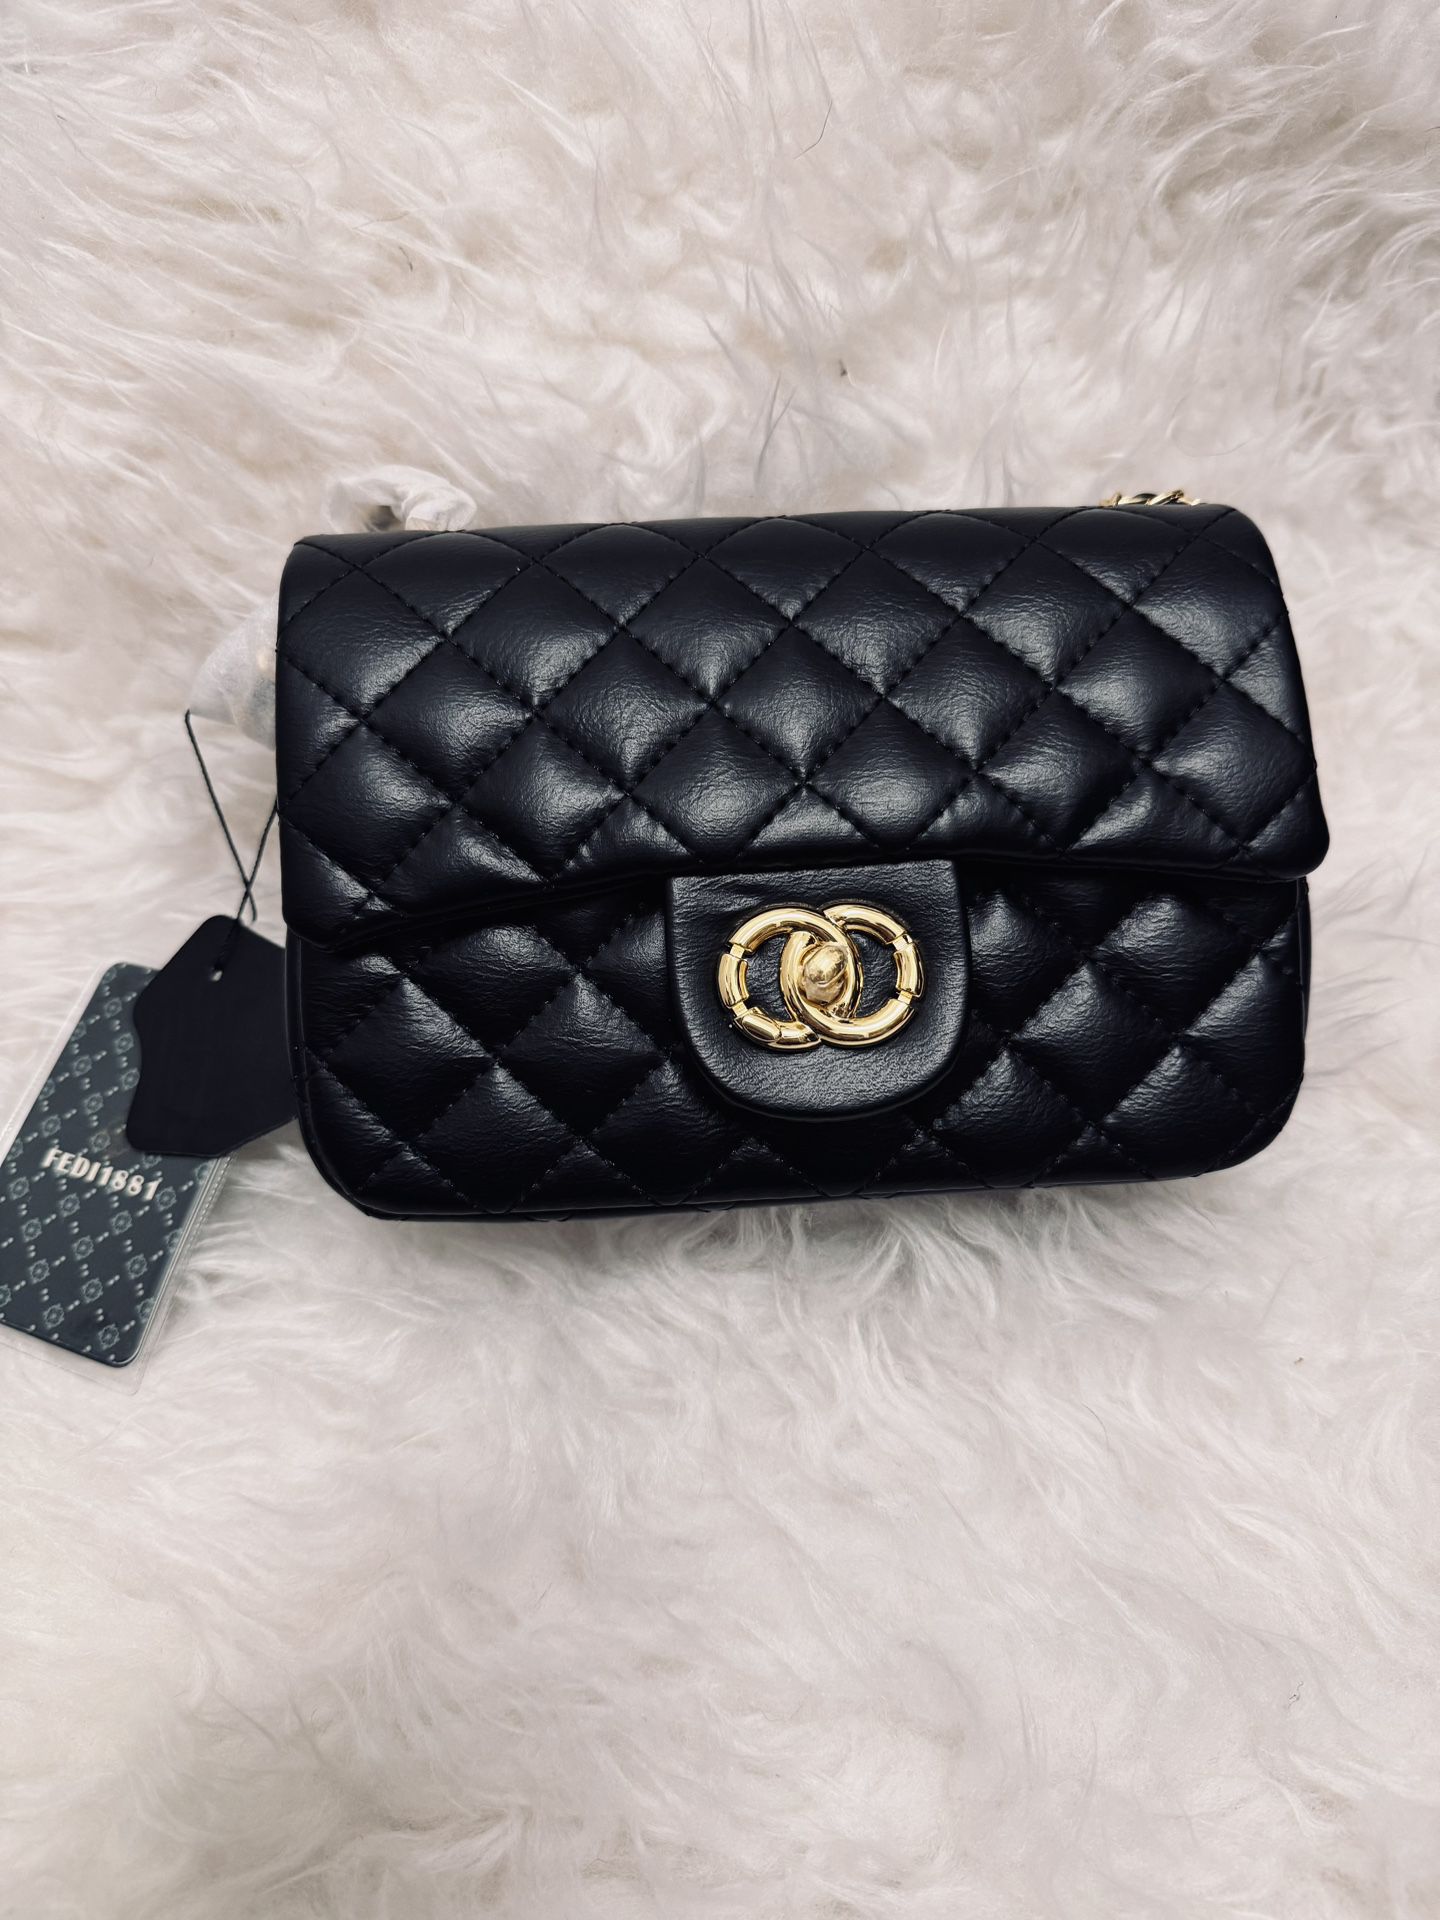 Fedi1881 Leather Bag DIY To Chanel 